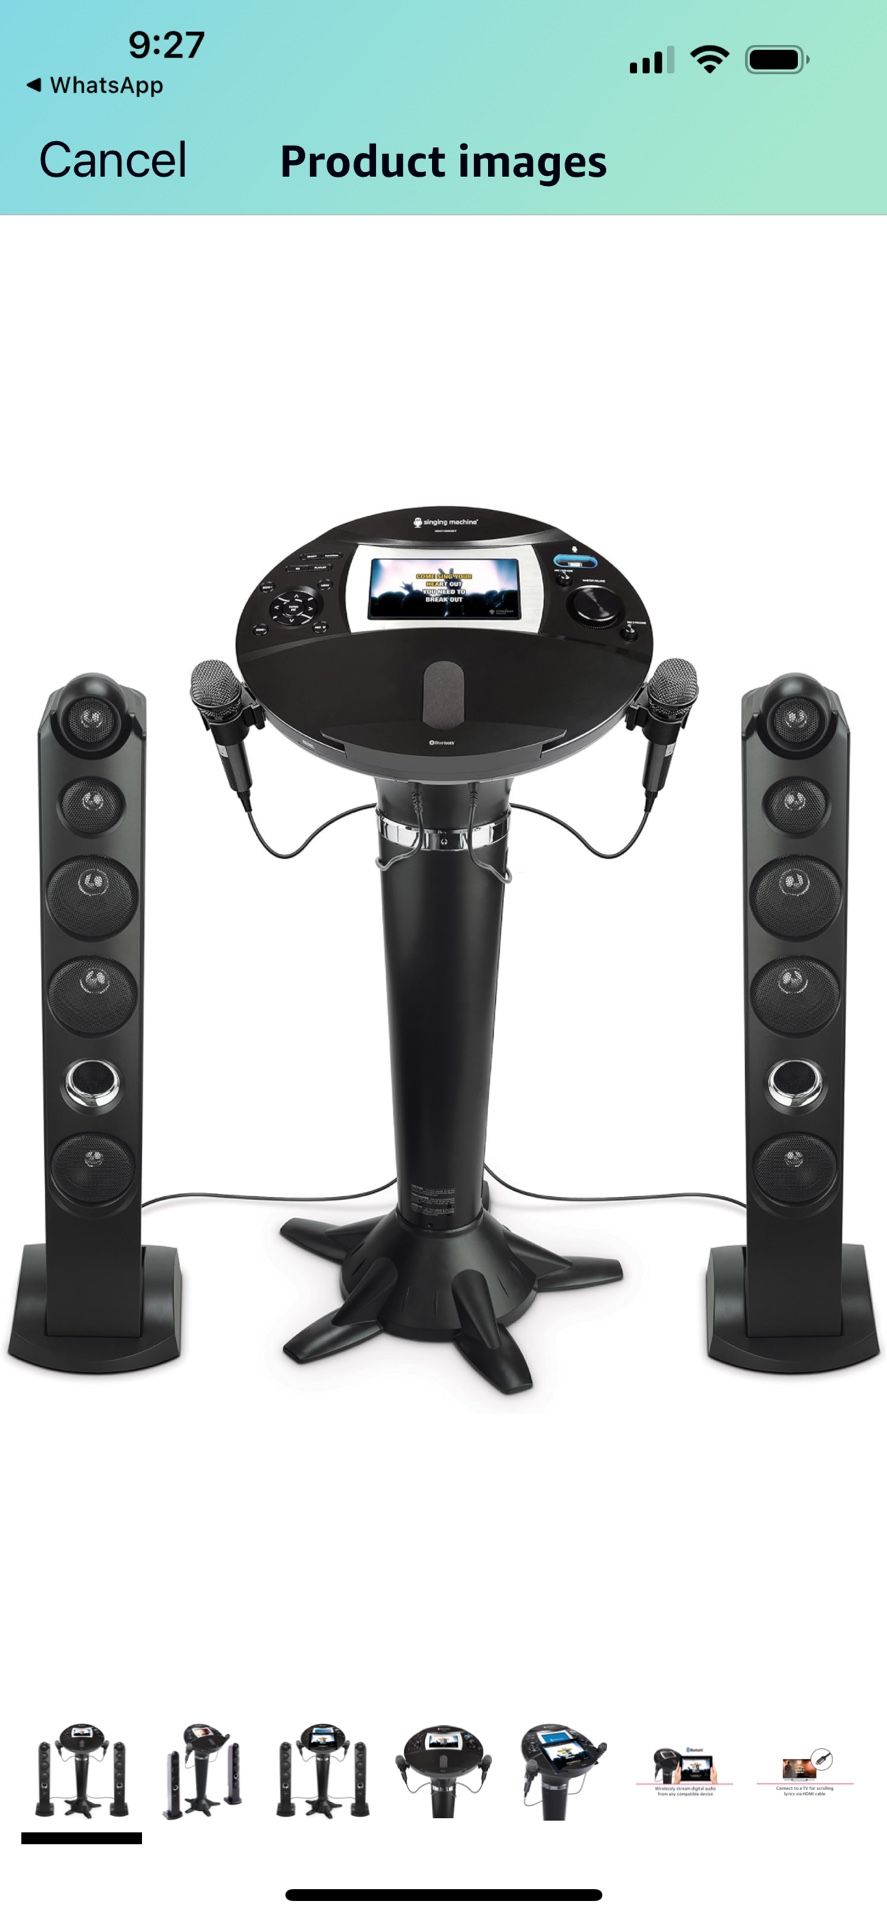 Singing Machine iSM1060BT All-Digital HD Karaoke System with Bluetooth